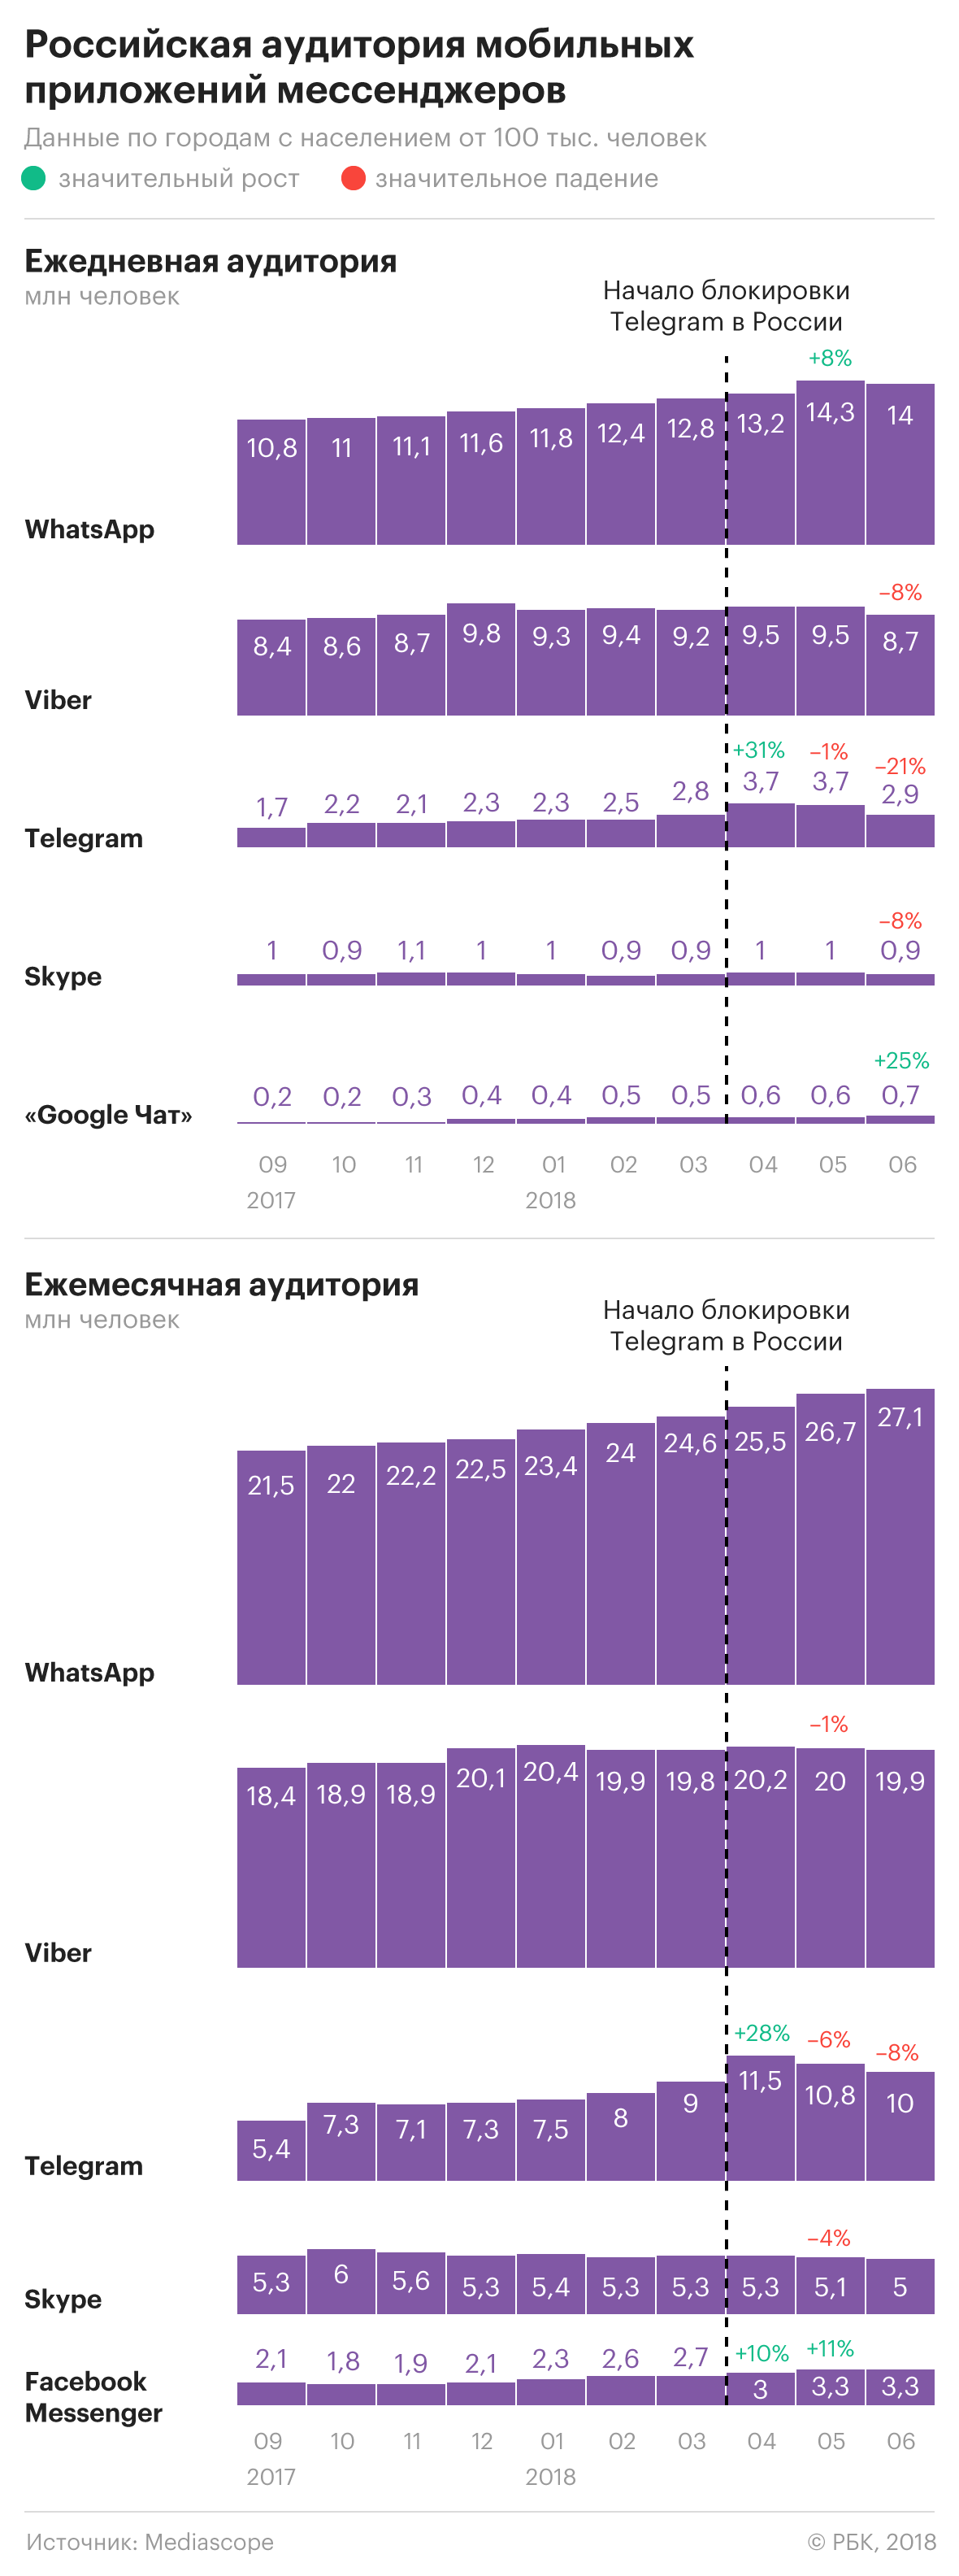 Telegram потерял в России пятую часть аудитории